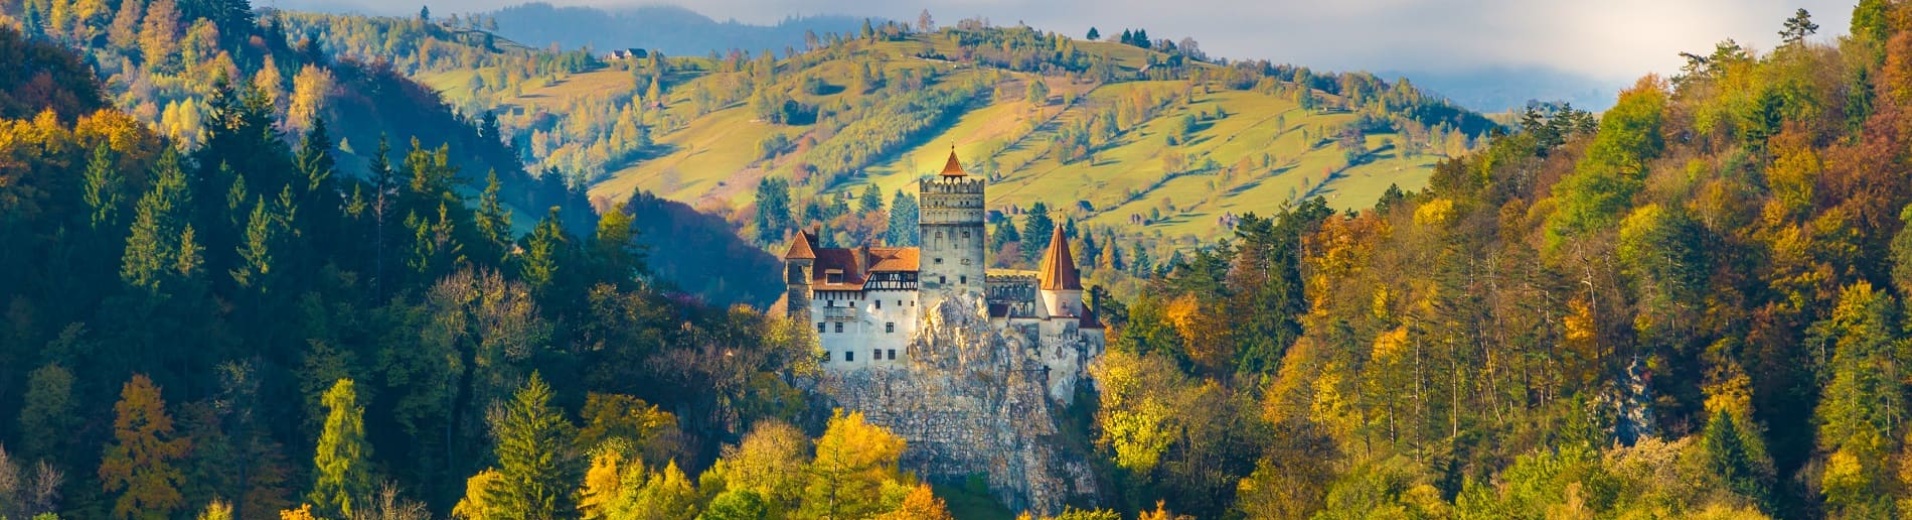 Château de Dracula à Bran en Roumanie